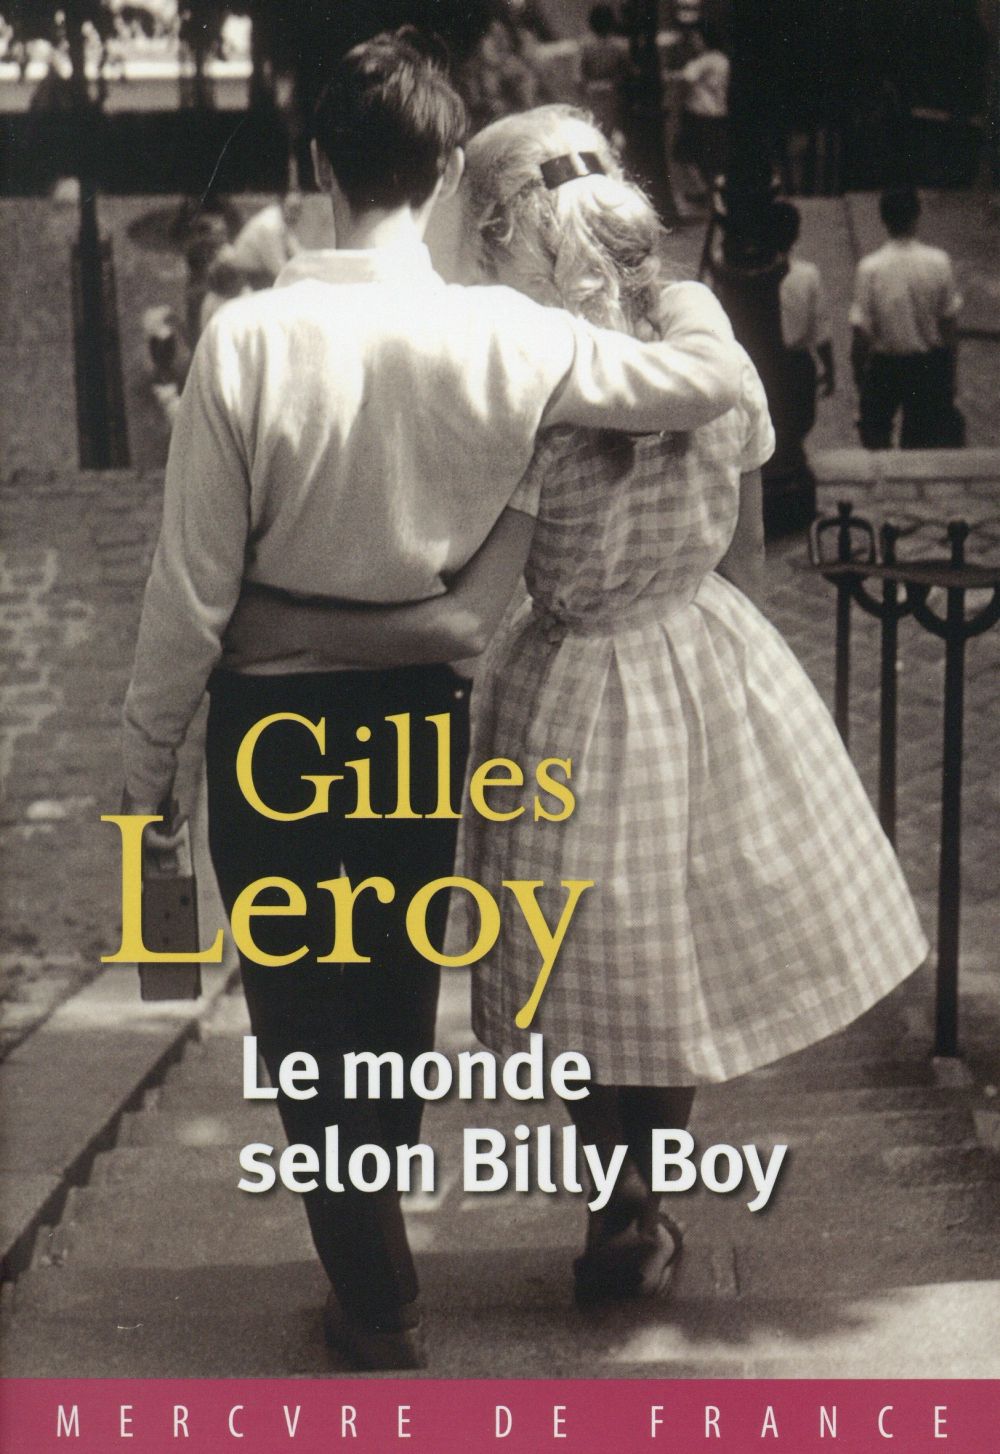 La chronique #4 du Club des Explorateurs : "Le monde selon Billy Boy" de Gilles Leroy